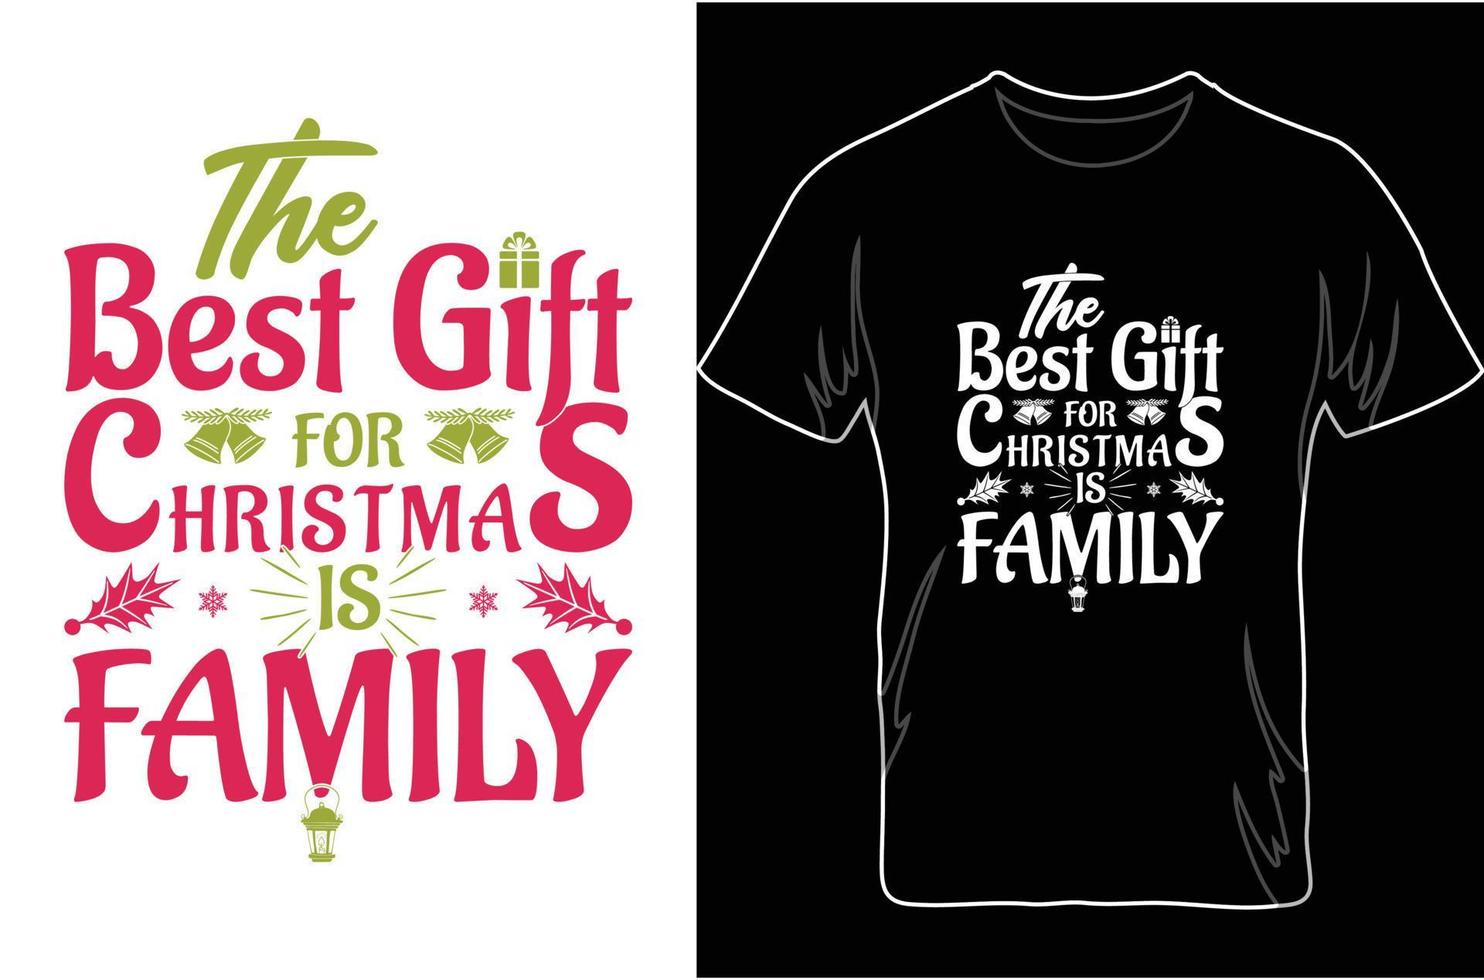 das beste geschenk zu weihnachten ist die familie. Weihnachtsgeschenke für die Familie. vektor